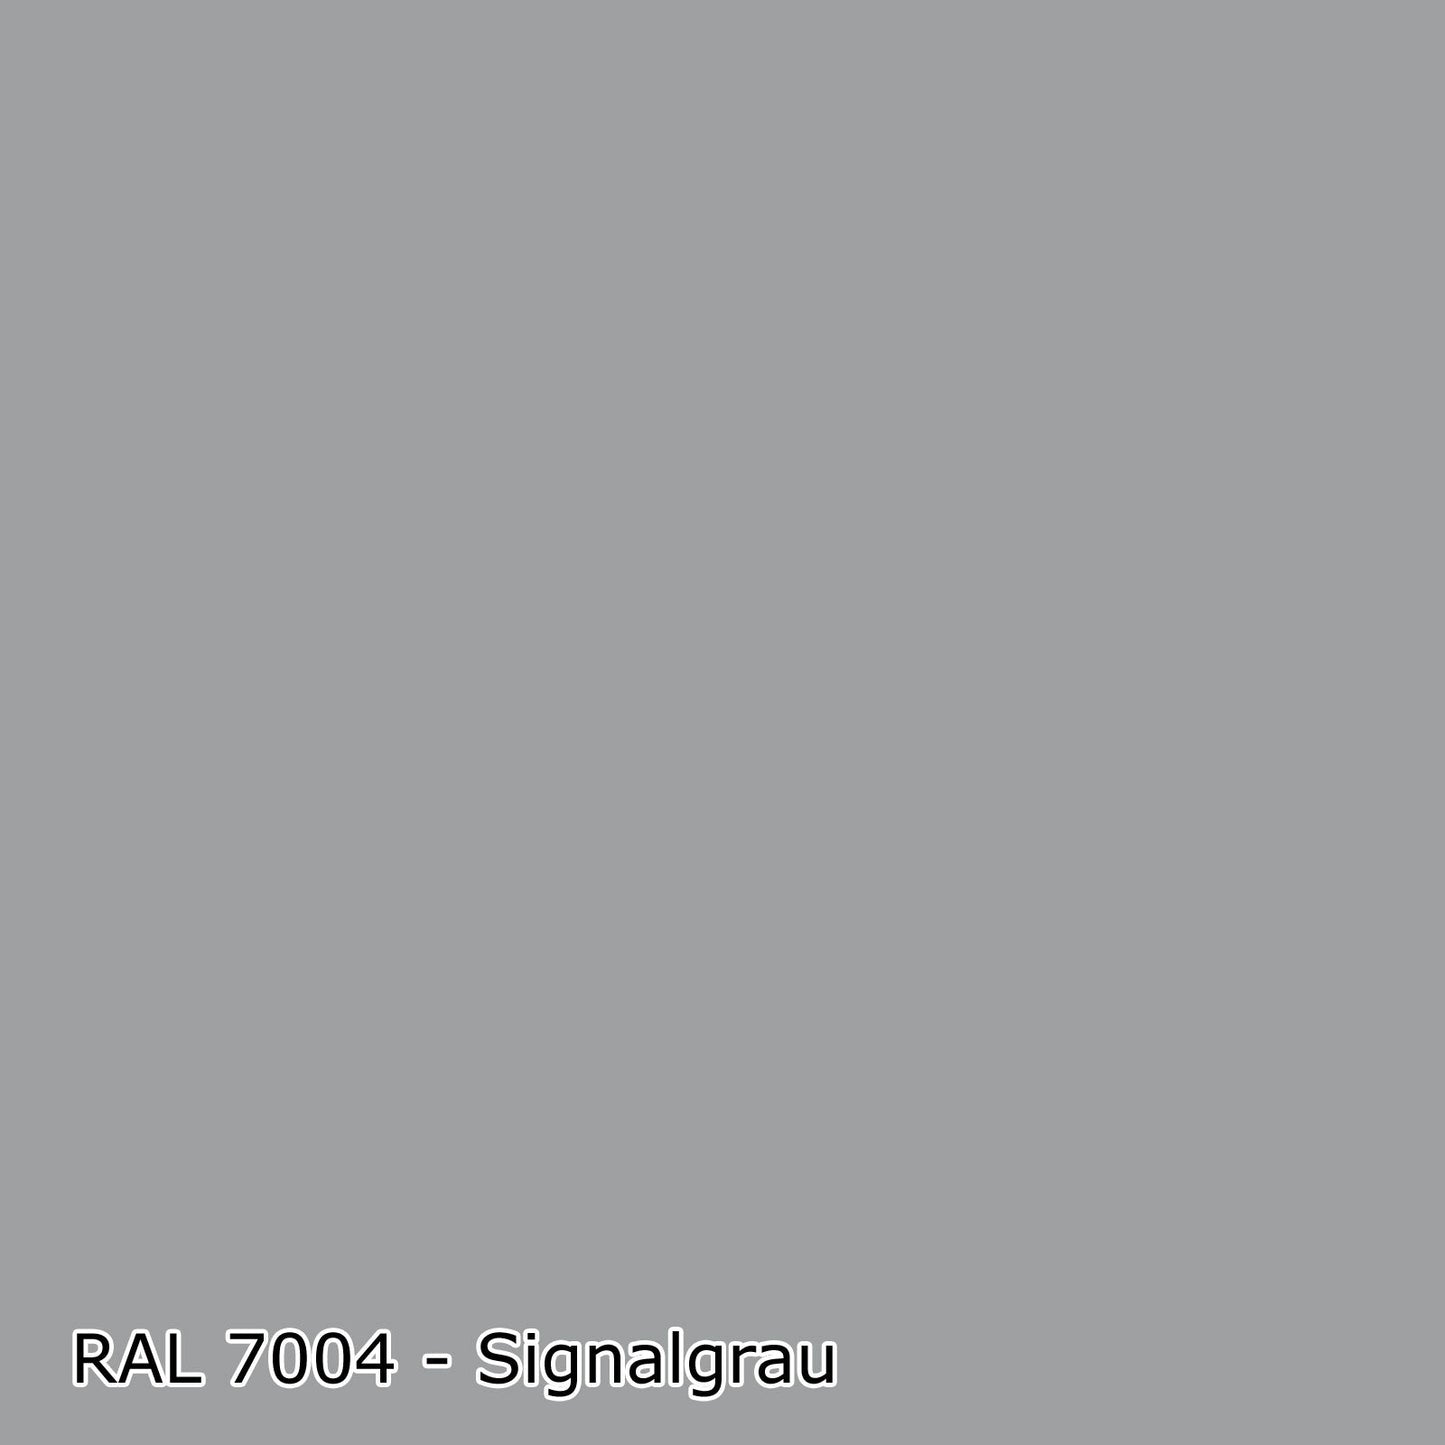 1 L Heizkörperlack, Heizungslack, RAL Farbwahl - SEIDENMATT (RAL 6007 - 9018)